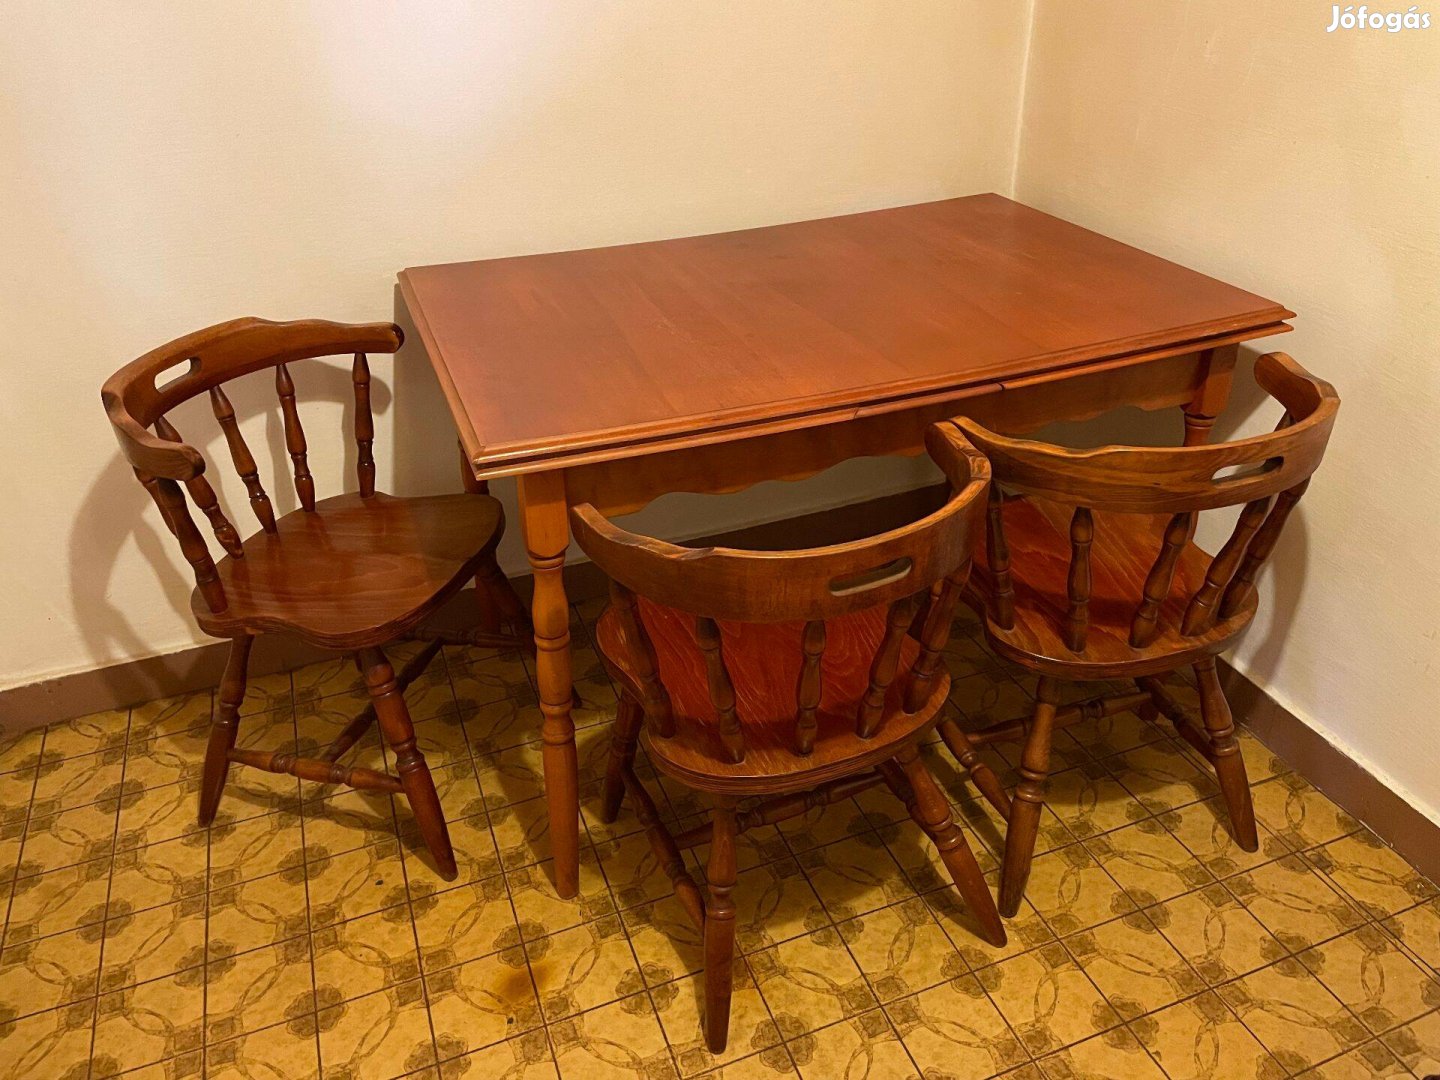 Bonanza étkezőasztal 6 székkel cseresznye színű sérülésmentes